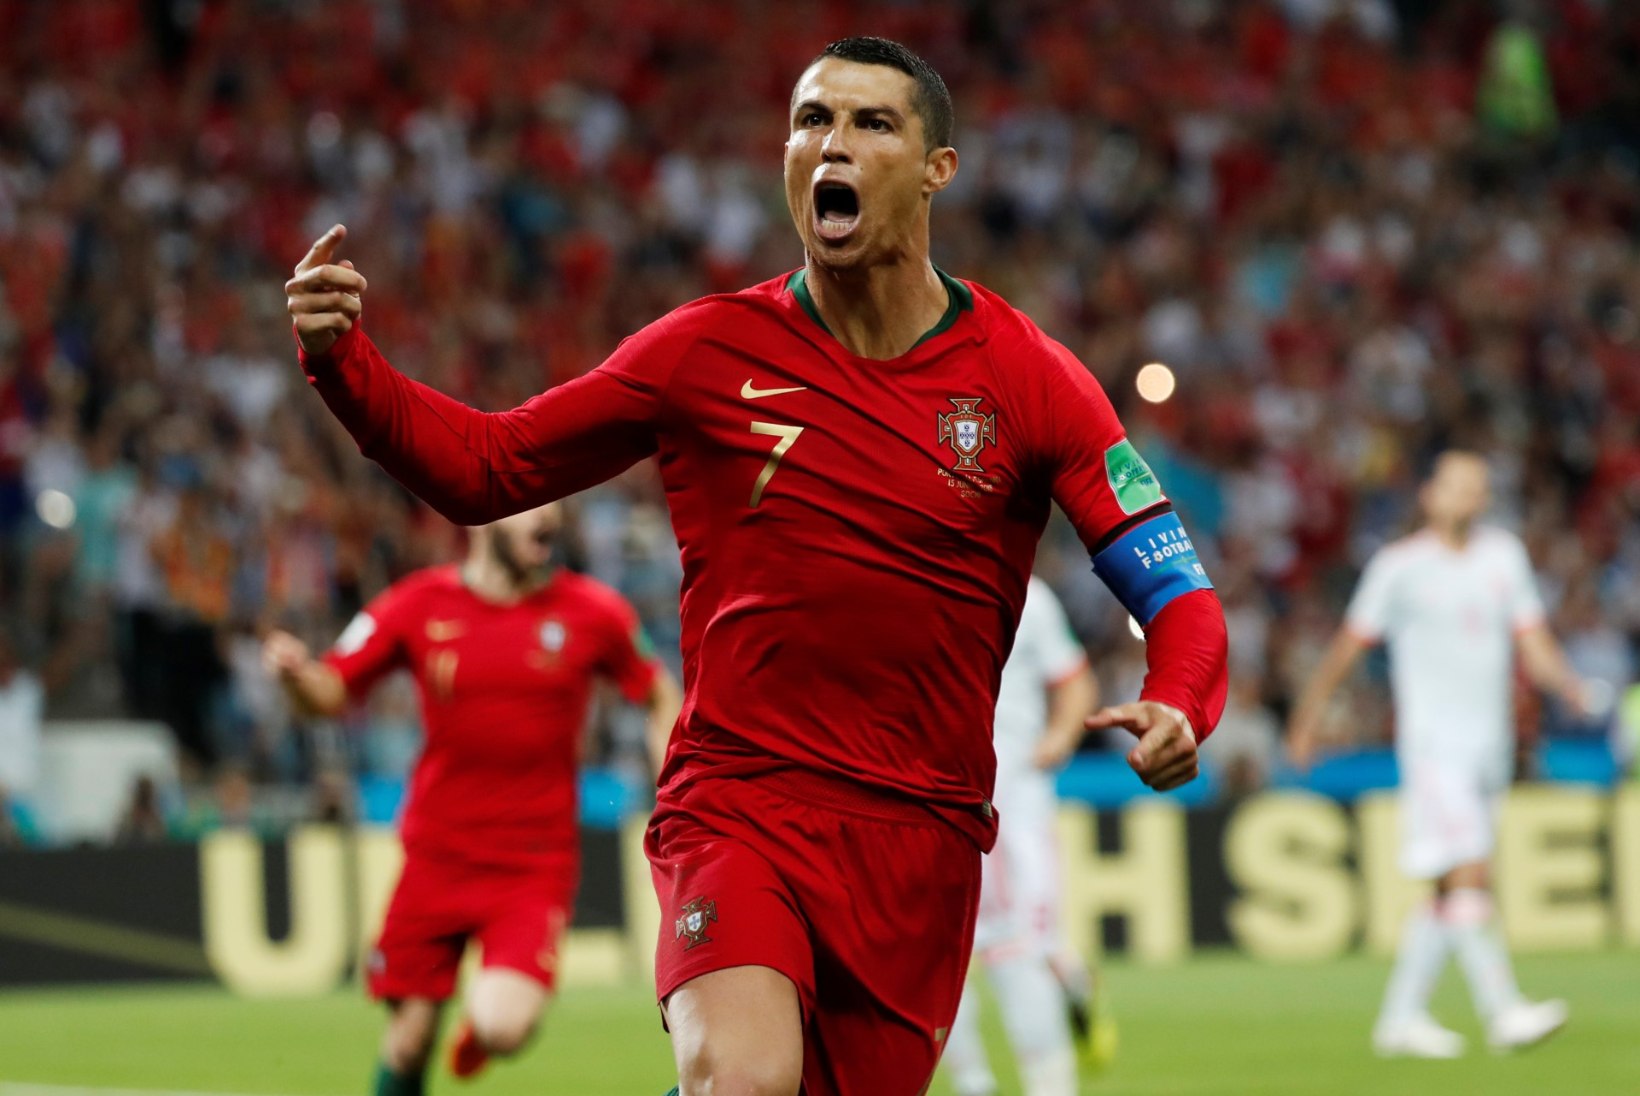 Kapten Ronaldo: kõik ohverdasid end tiimi nimel